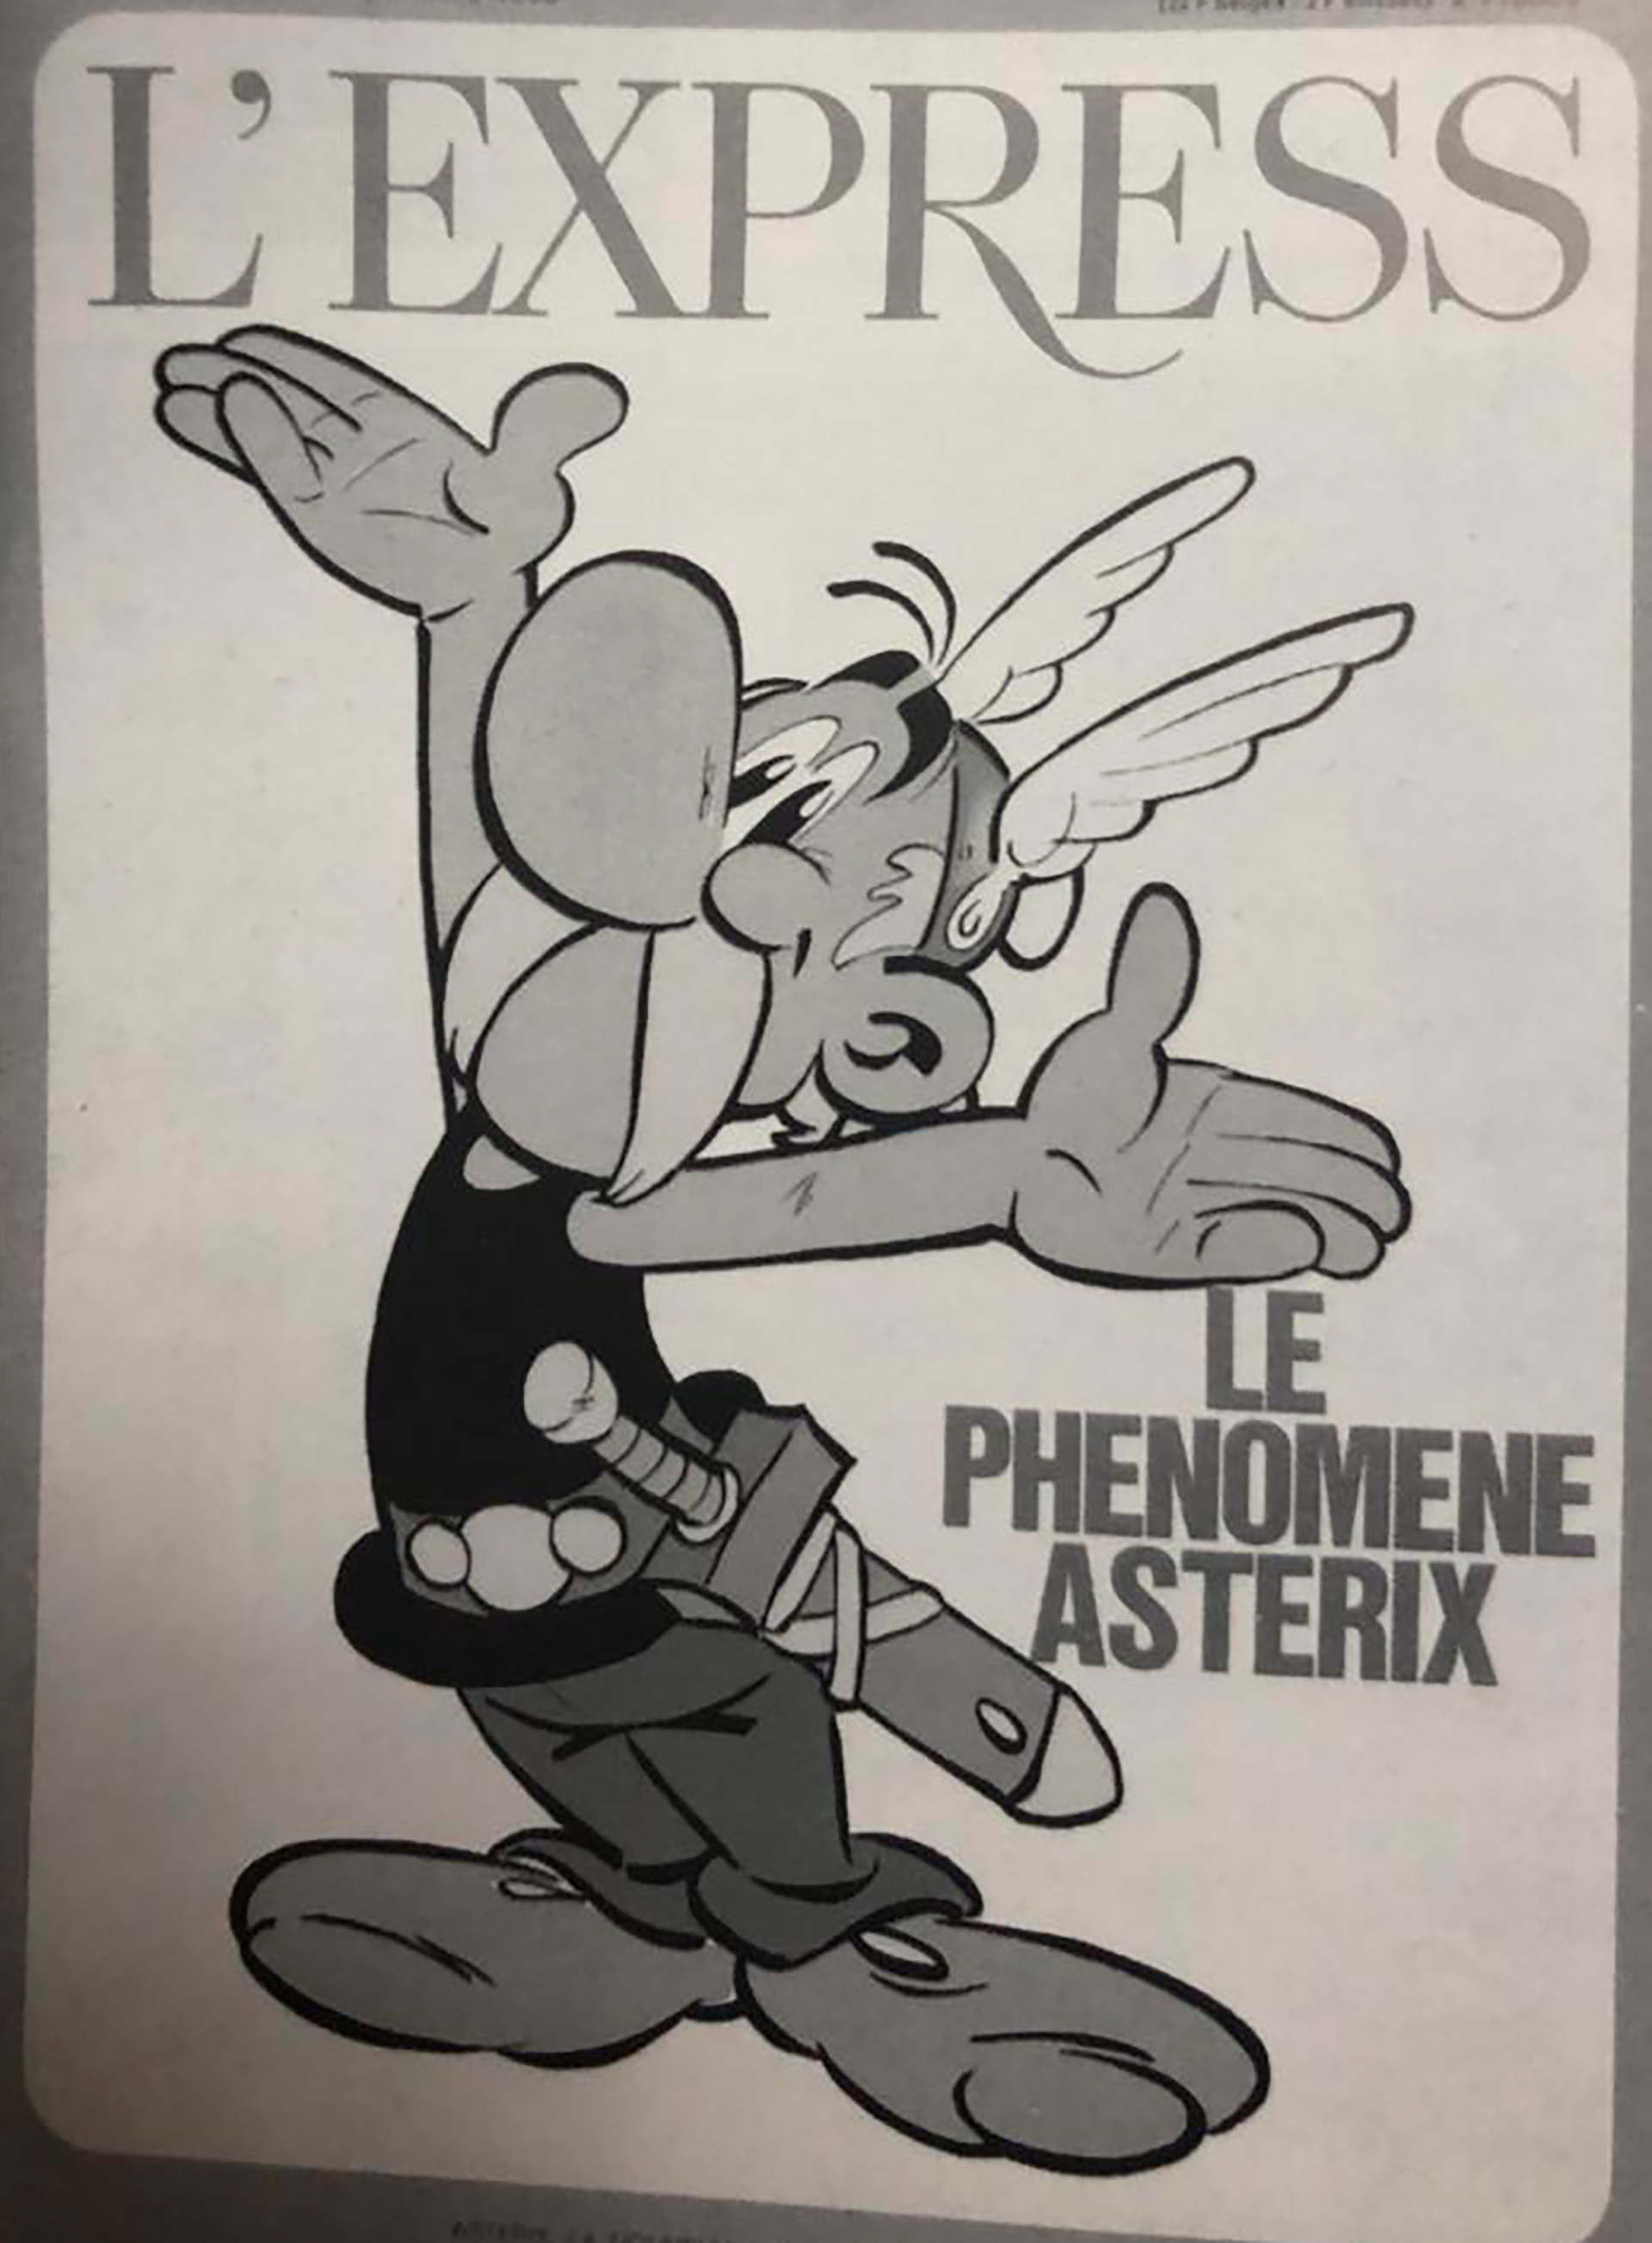 La tapa de L'Express en 1966: "El fenómeno Asterix"